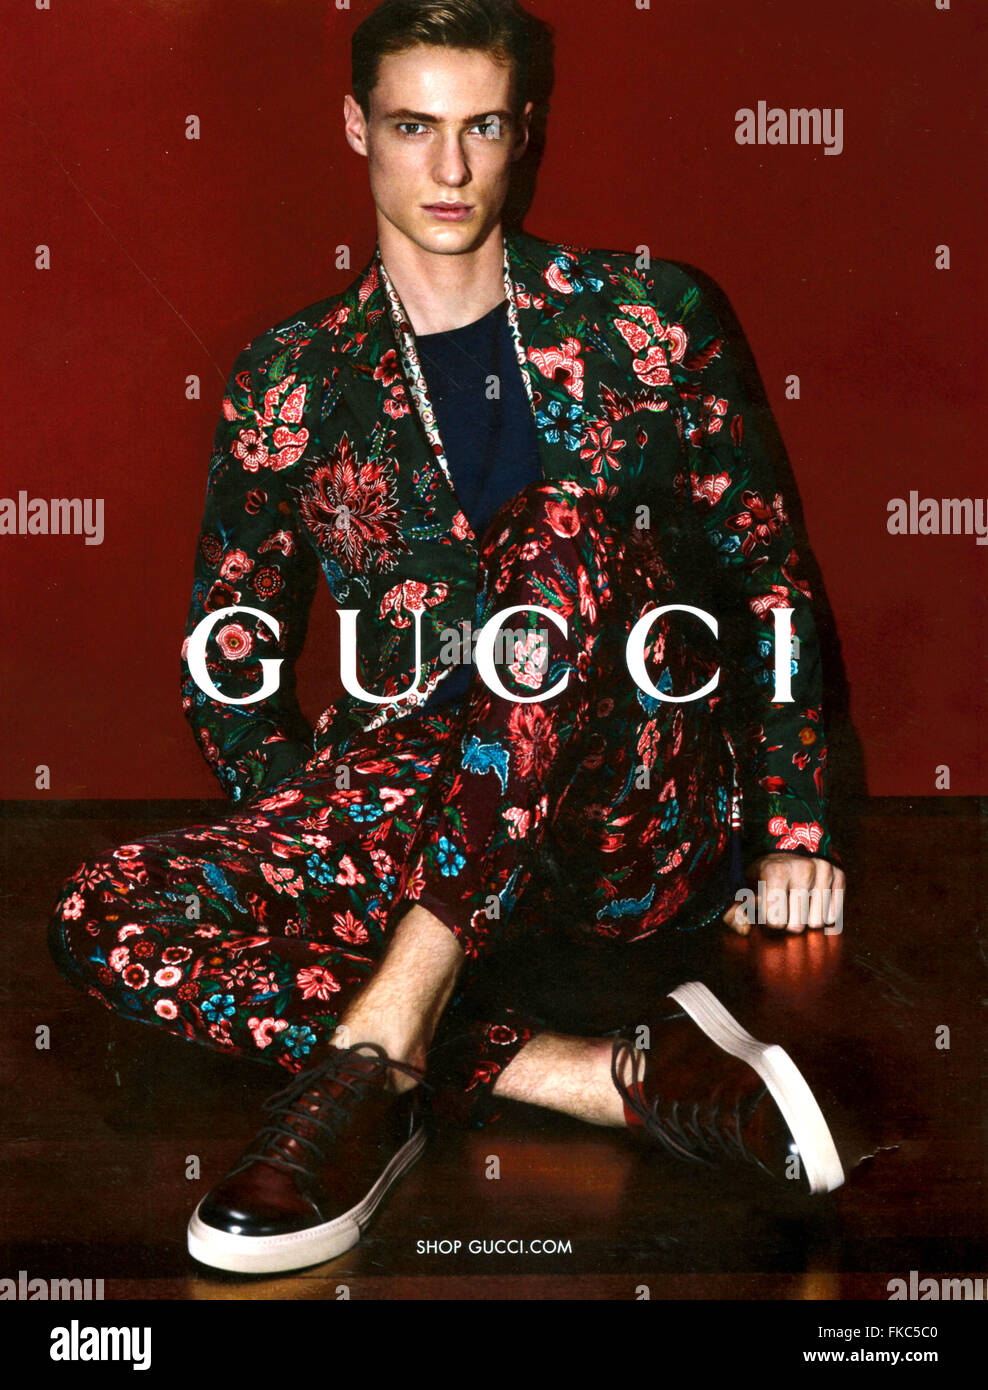 2010s UK Gucci Magazine Advert Stock Photo - Alamy